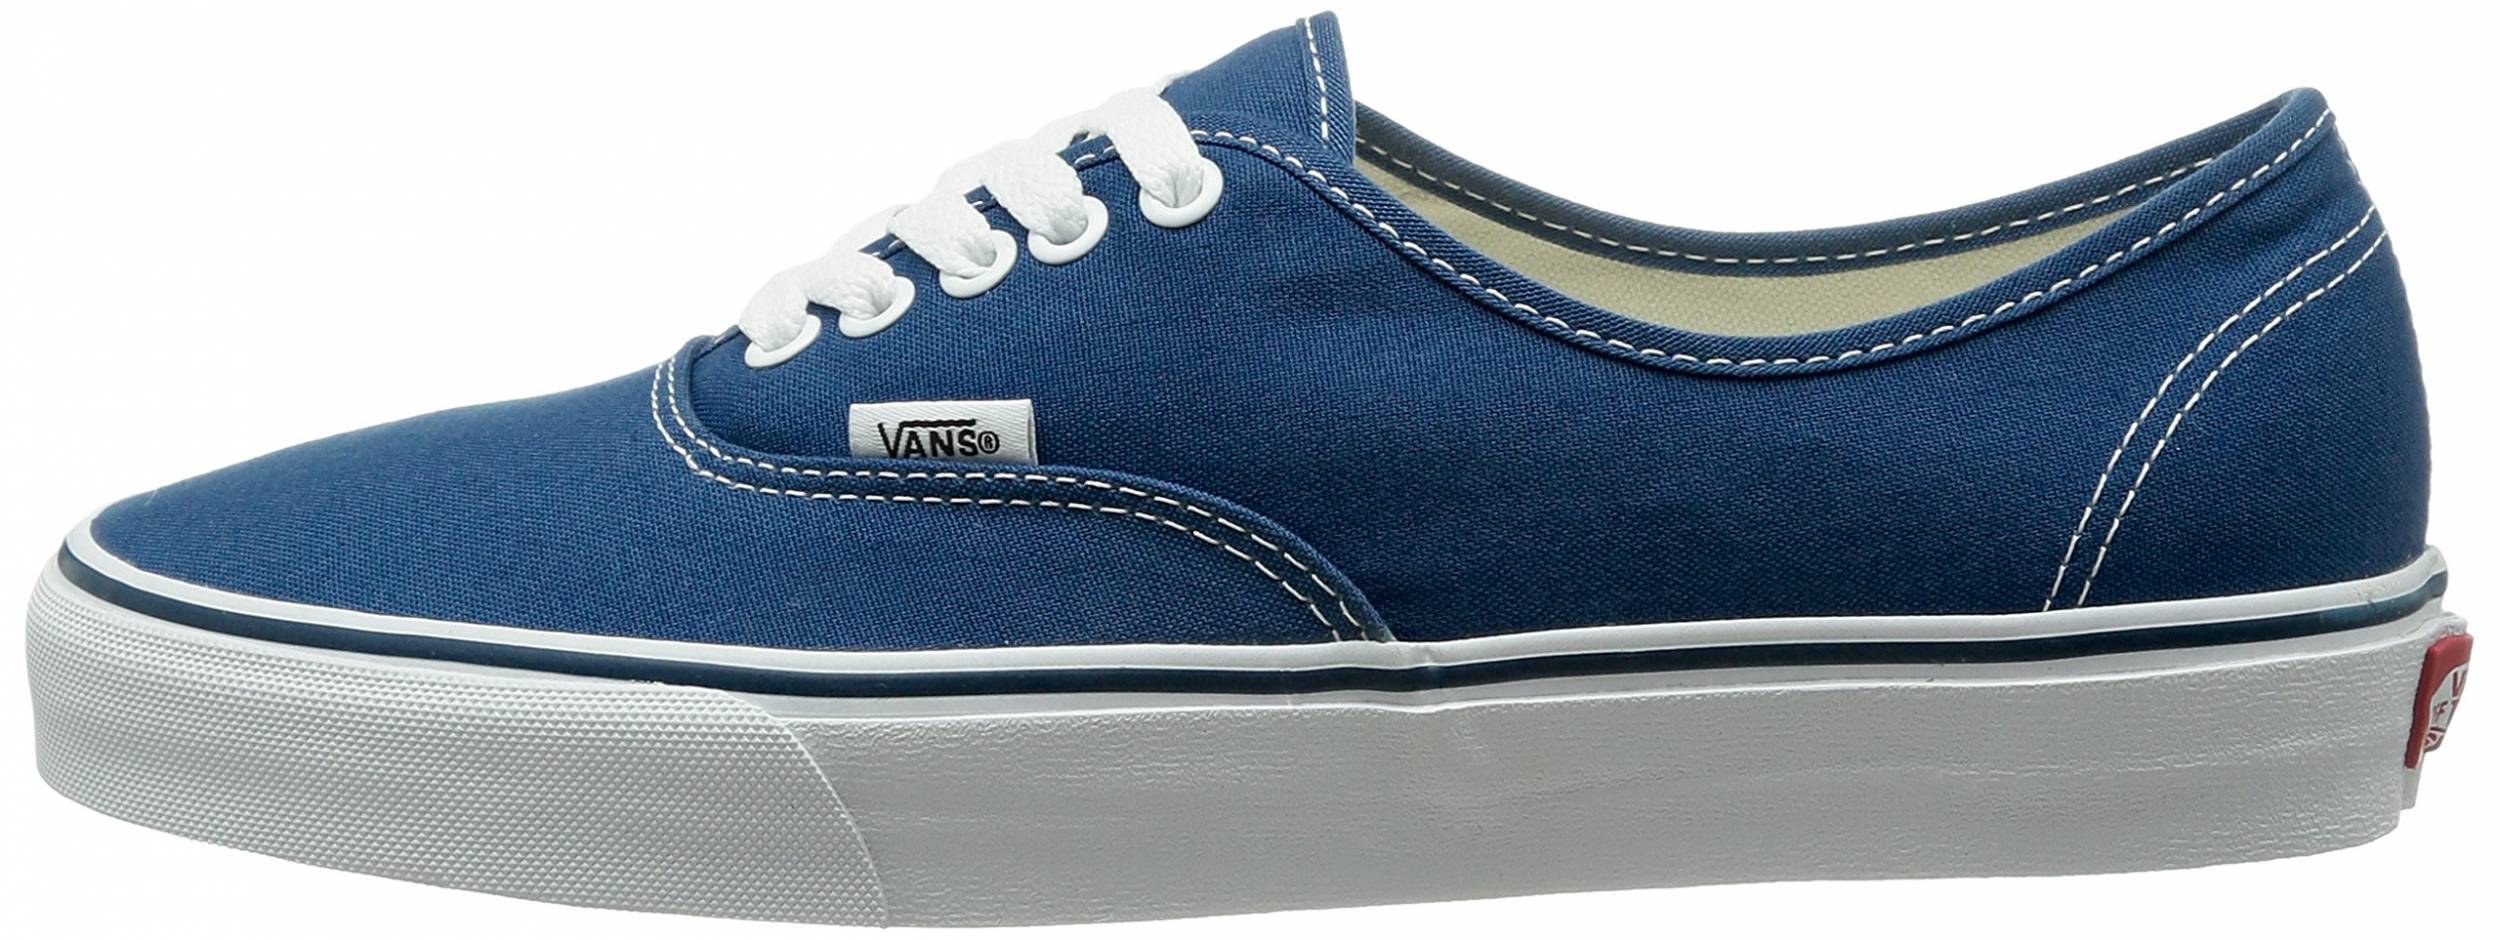 vans shoes color blue